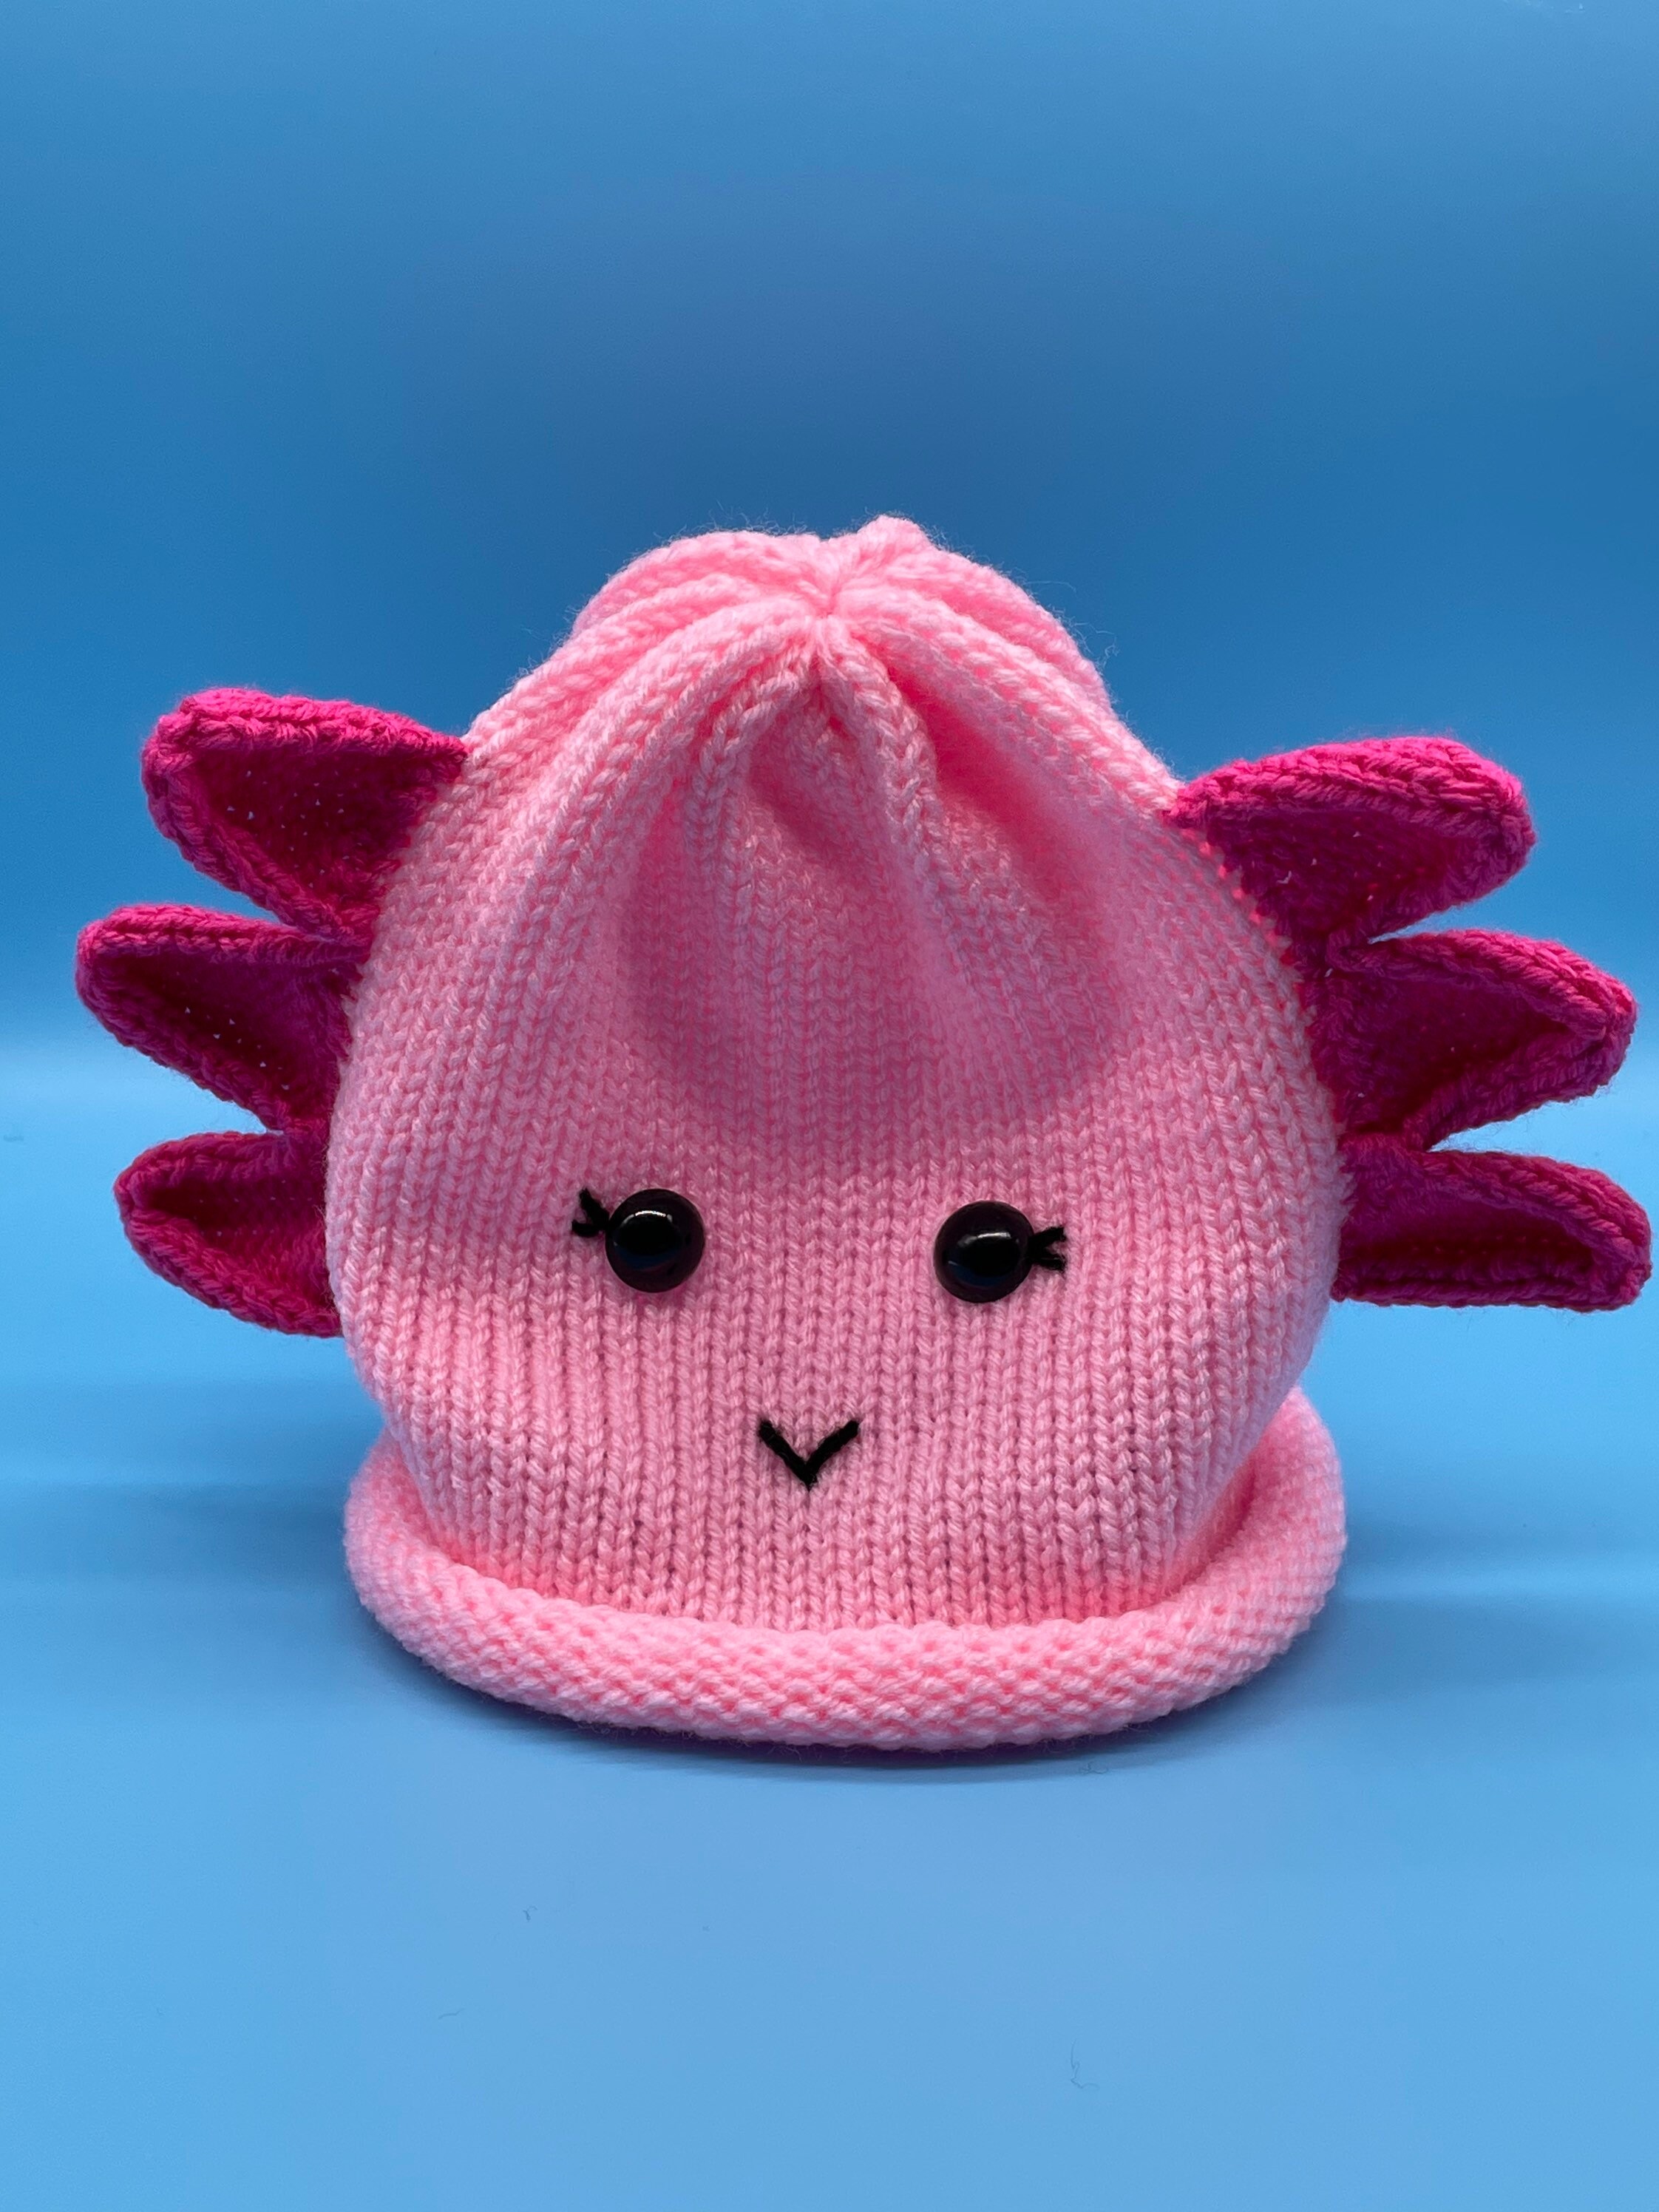 Tiny FoOd. Tiny hat. Tiny FoOd-hat. : r/axolotls